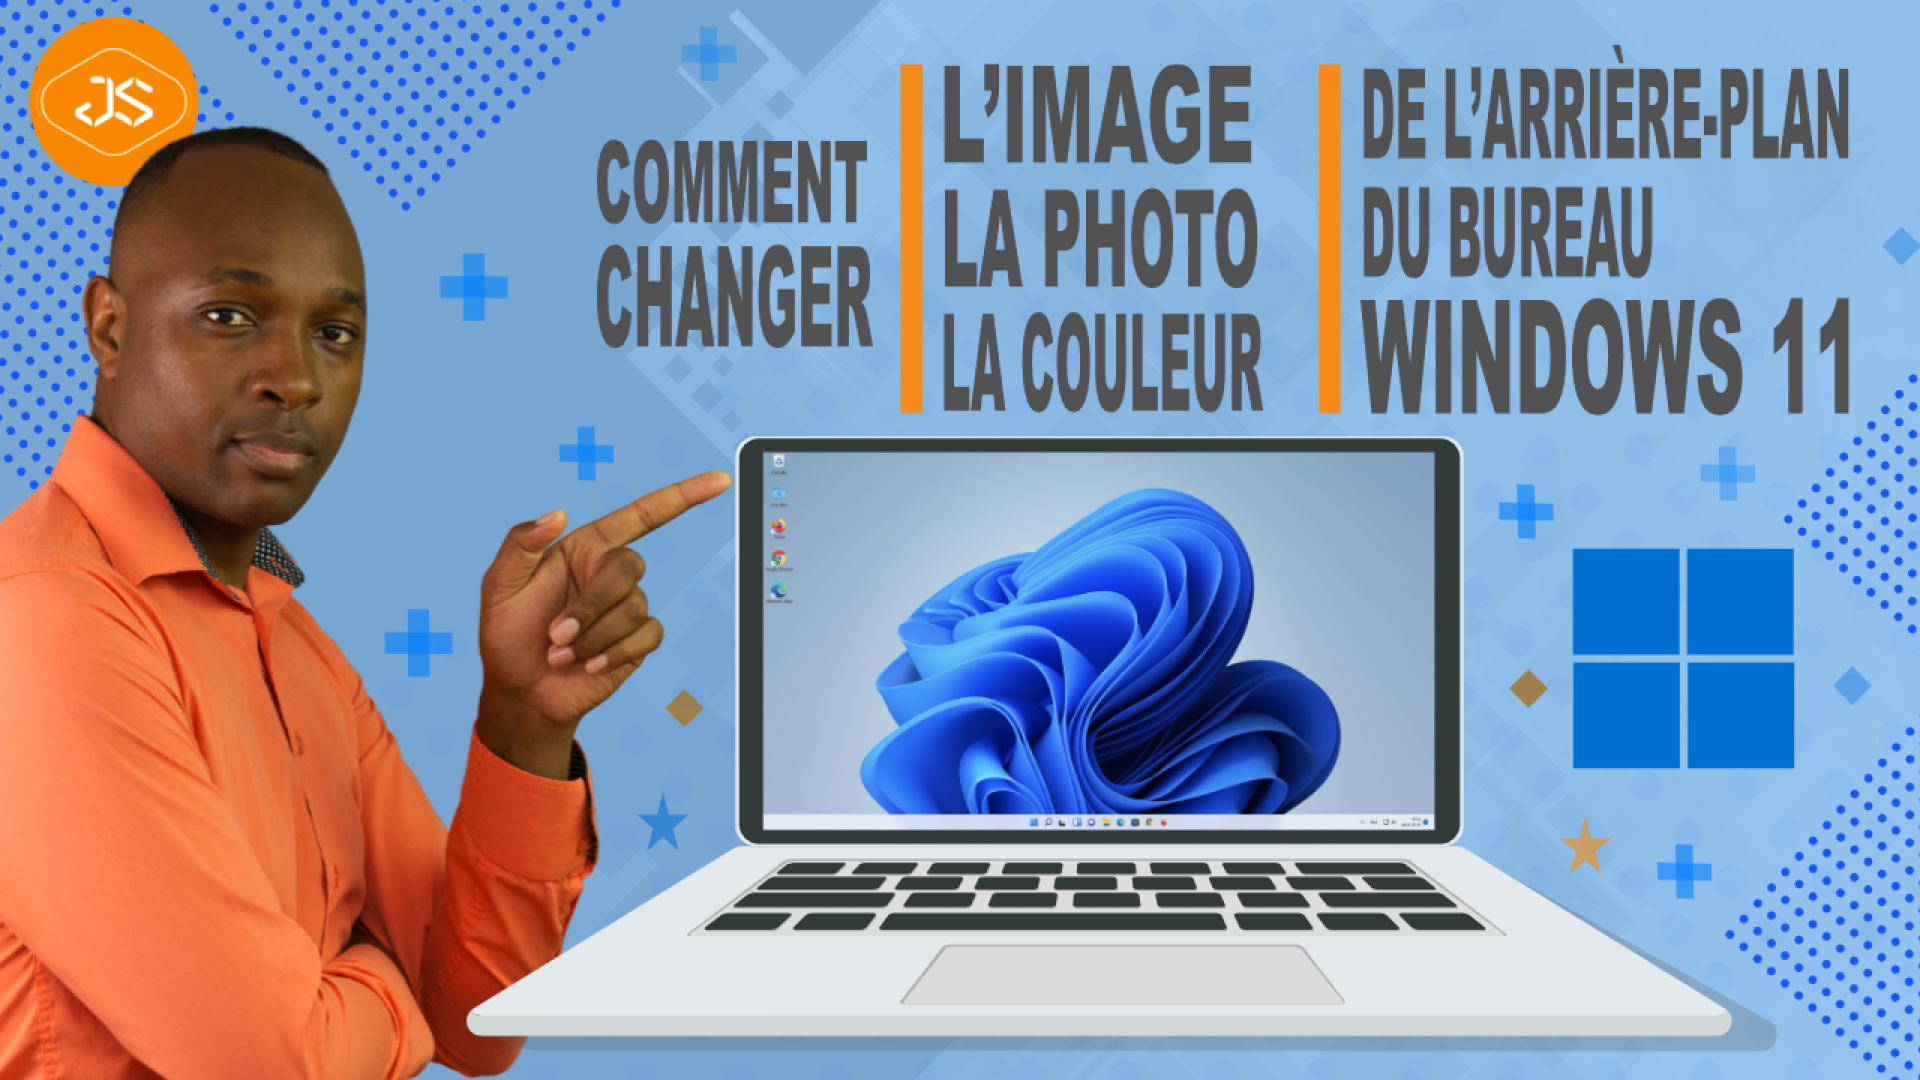 Comment changer l’image, la photo, la couleur de l’arrière-plan du bureau Windows 11